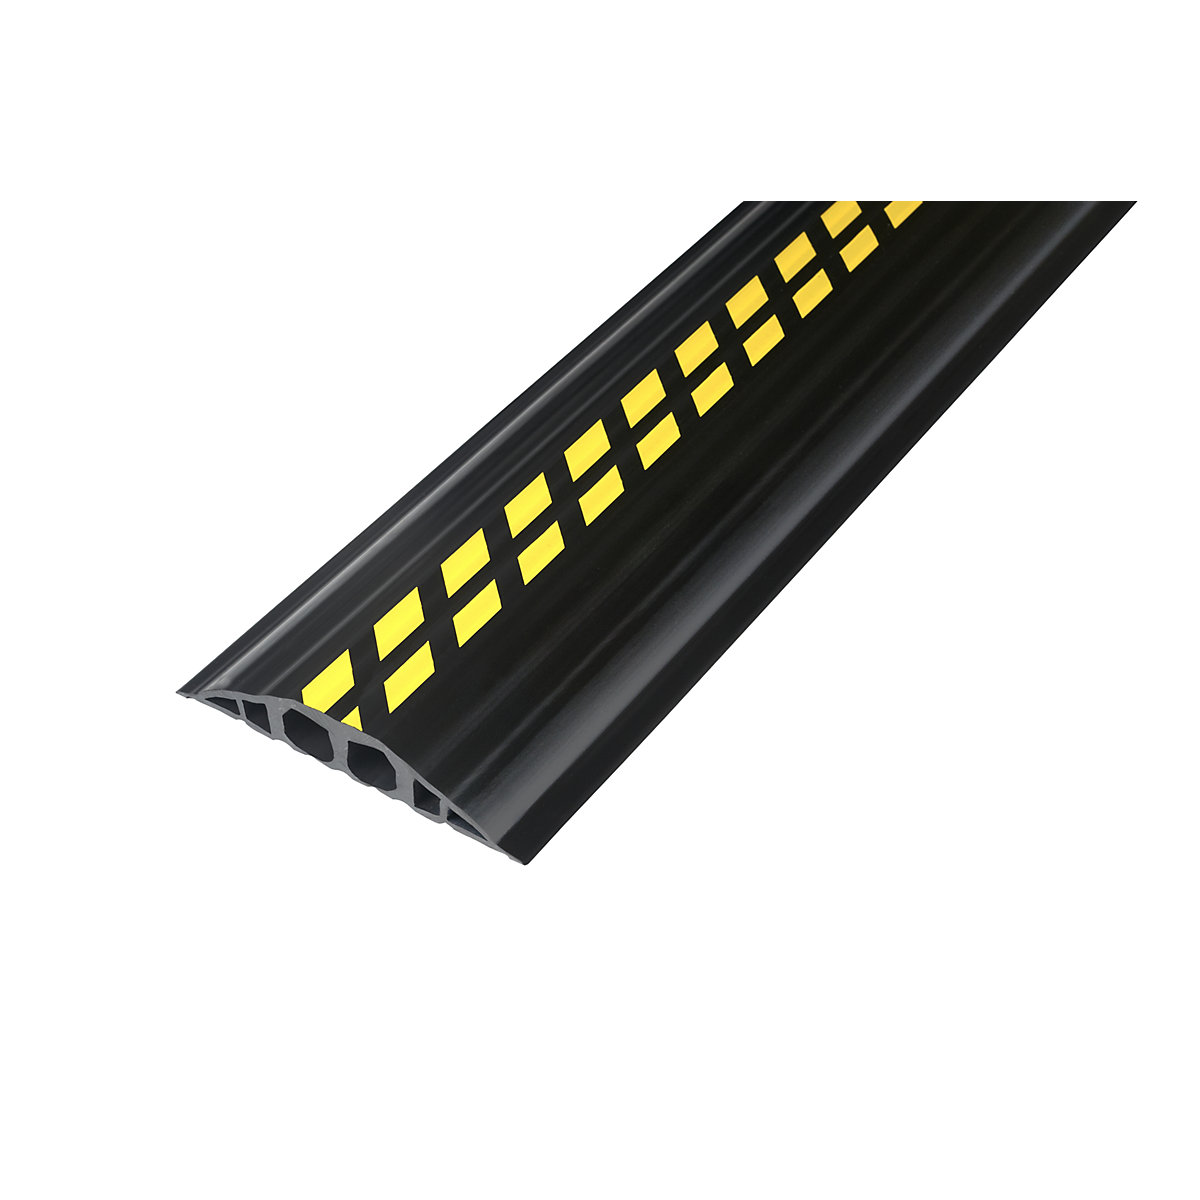 PVC kábelvezető padlóhíd, h x szé x ma 1500 x 200 x 35 mm, fekete / sárga